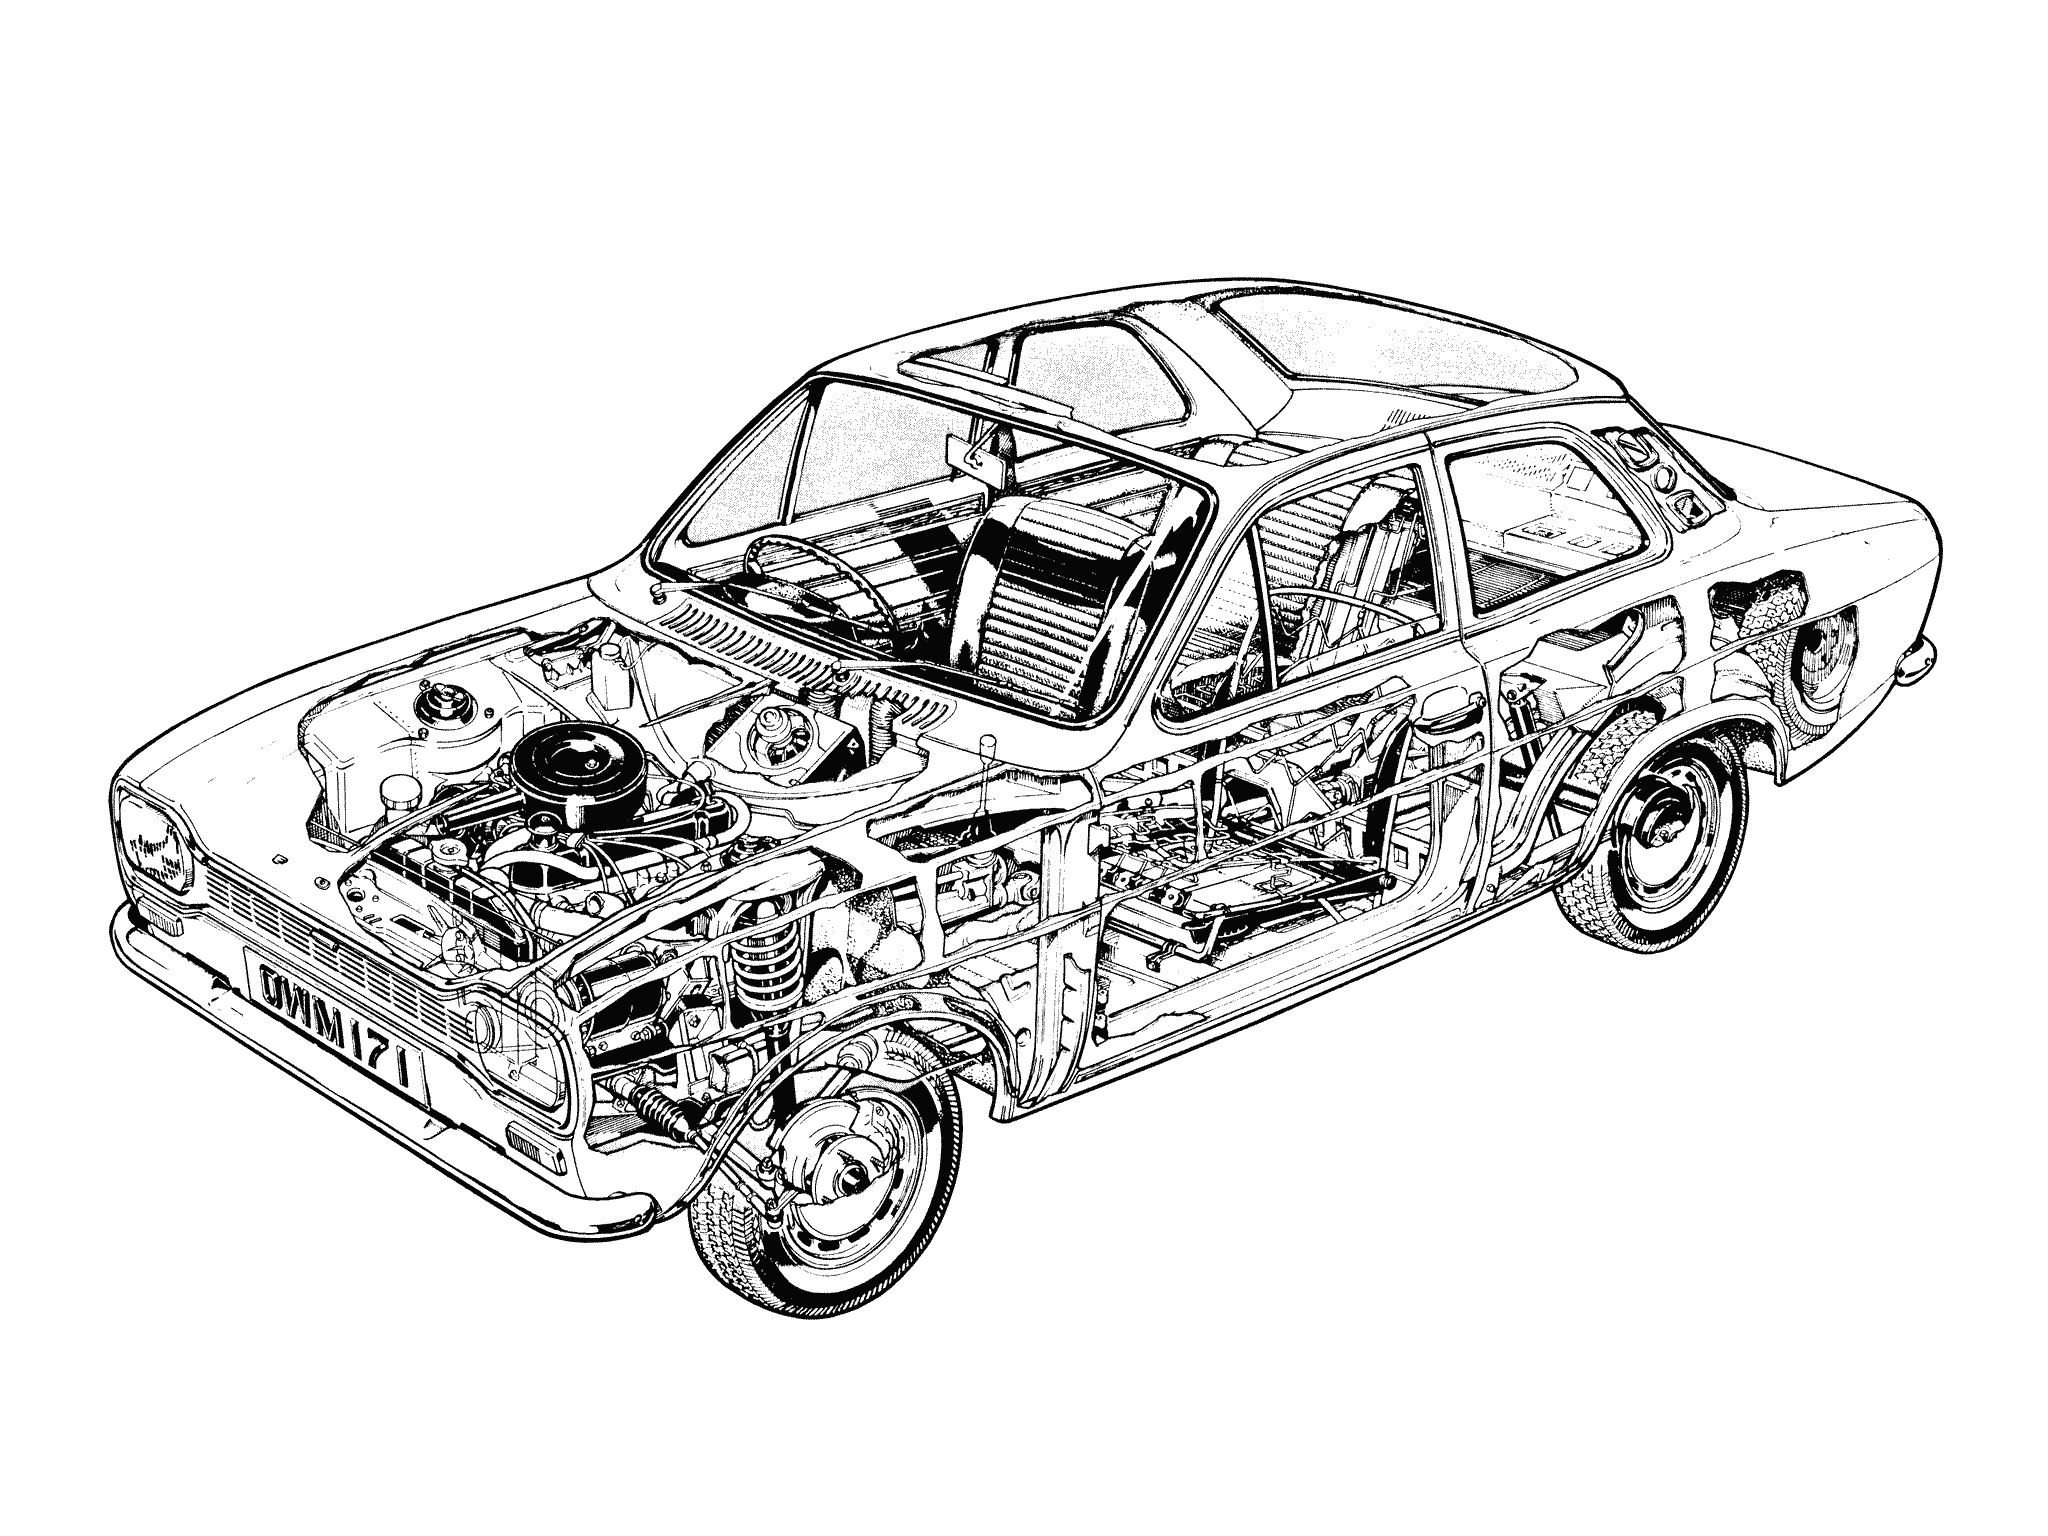 Ford Escort cutaway